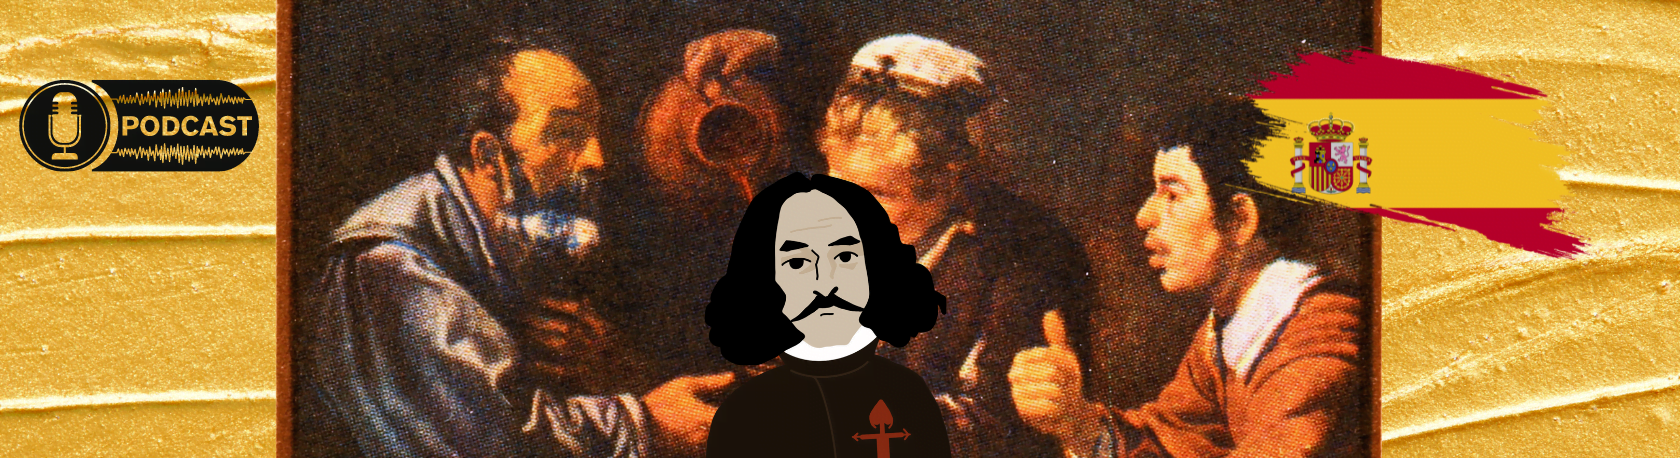 Easy Podcast: Velázquez, el pintor de los pintores